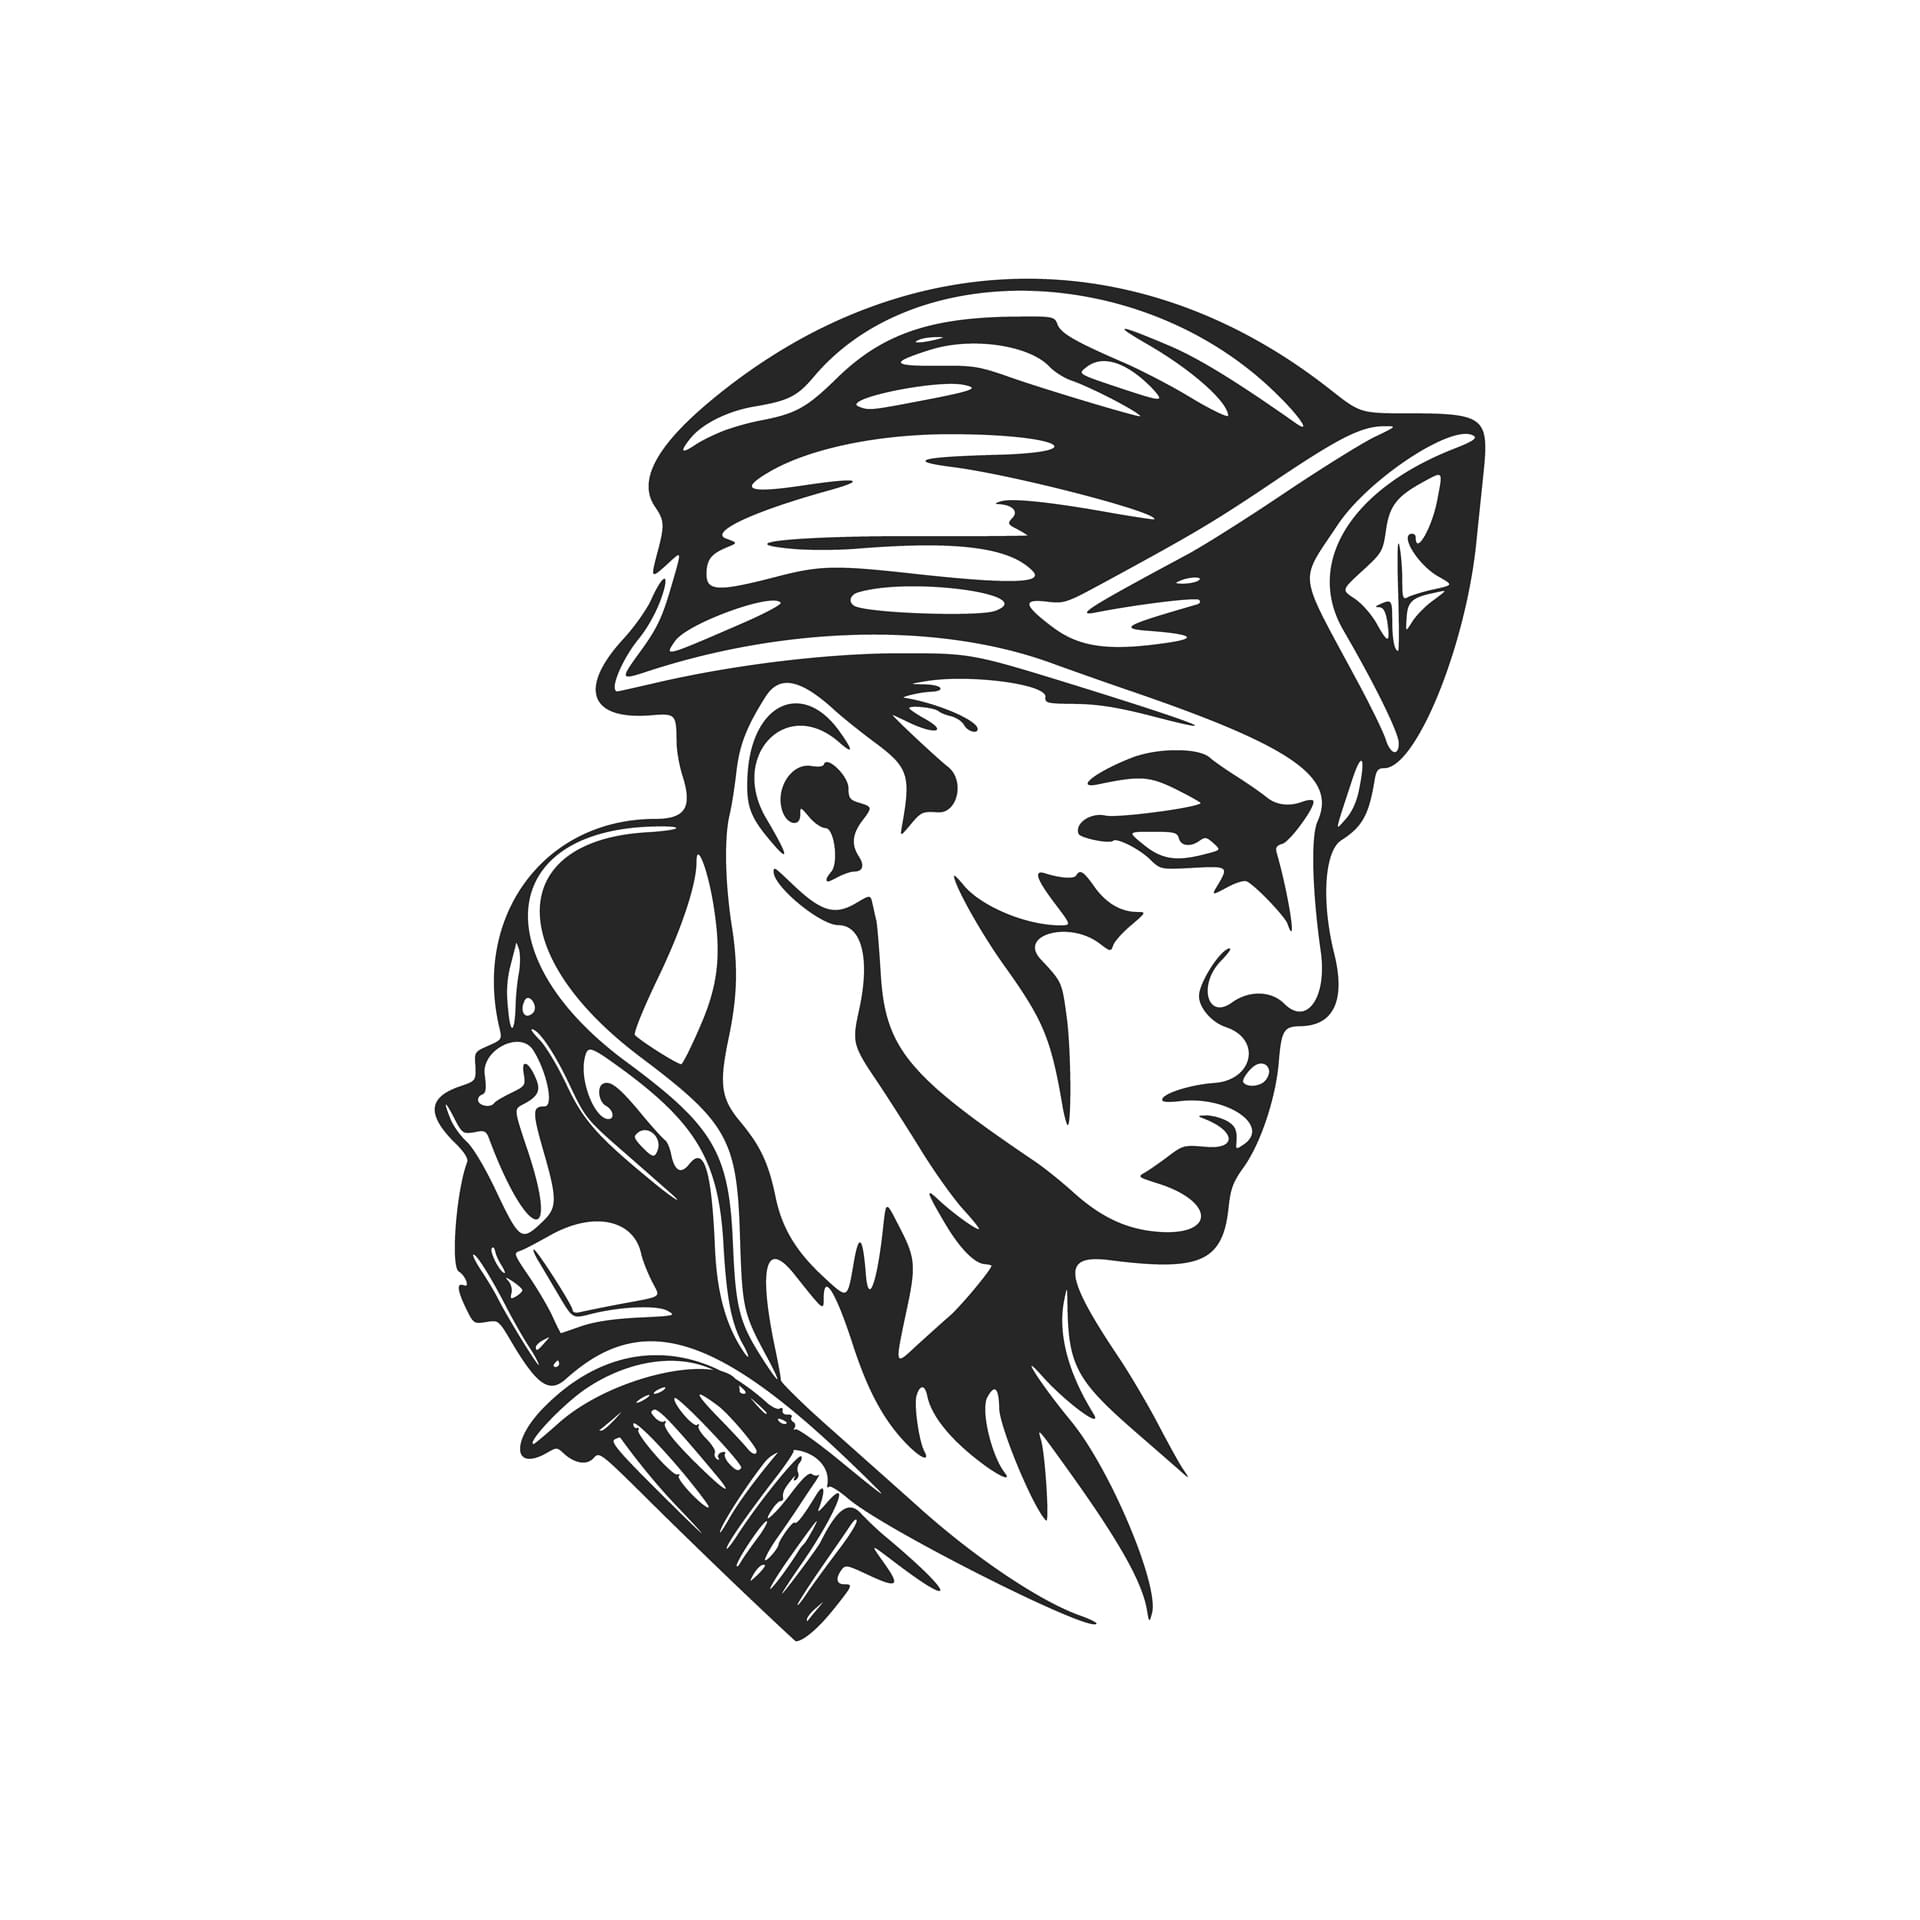 Black white stylish depicting military man